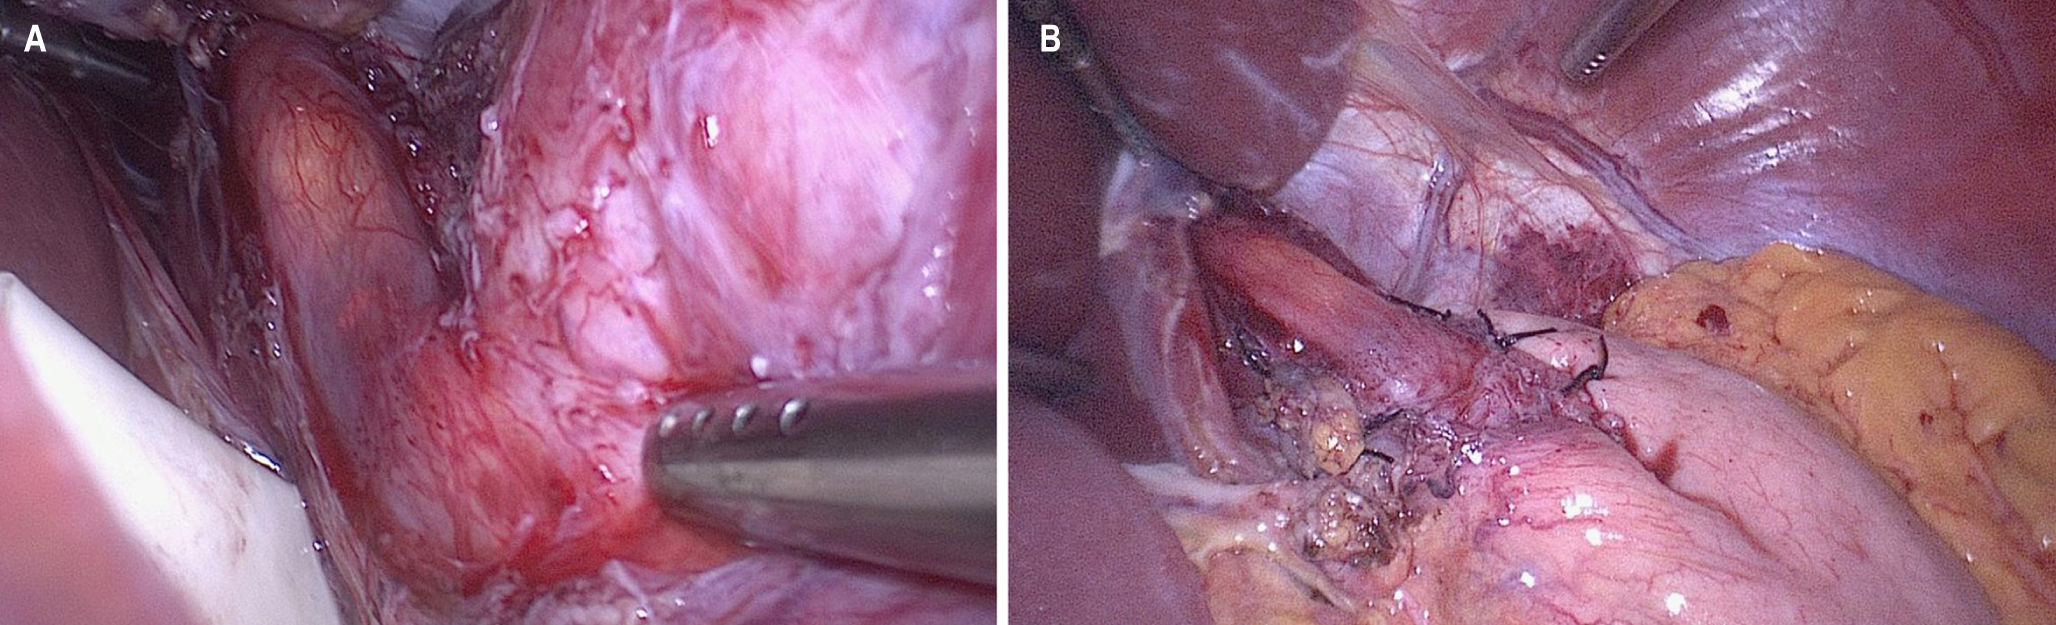 Figura 1. Técnica quirúrgica. A. Miotomía completa y verificación con endoscopia intraoperatoria. B. Funduplicatura parcial posterior (Toupet). Fuente: archivo de los autores.